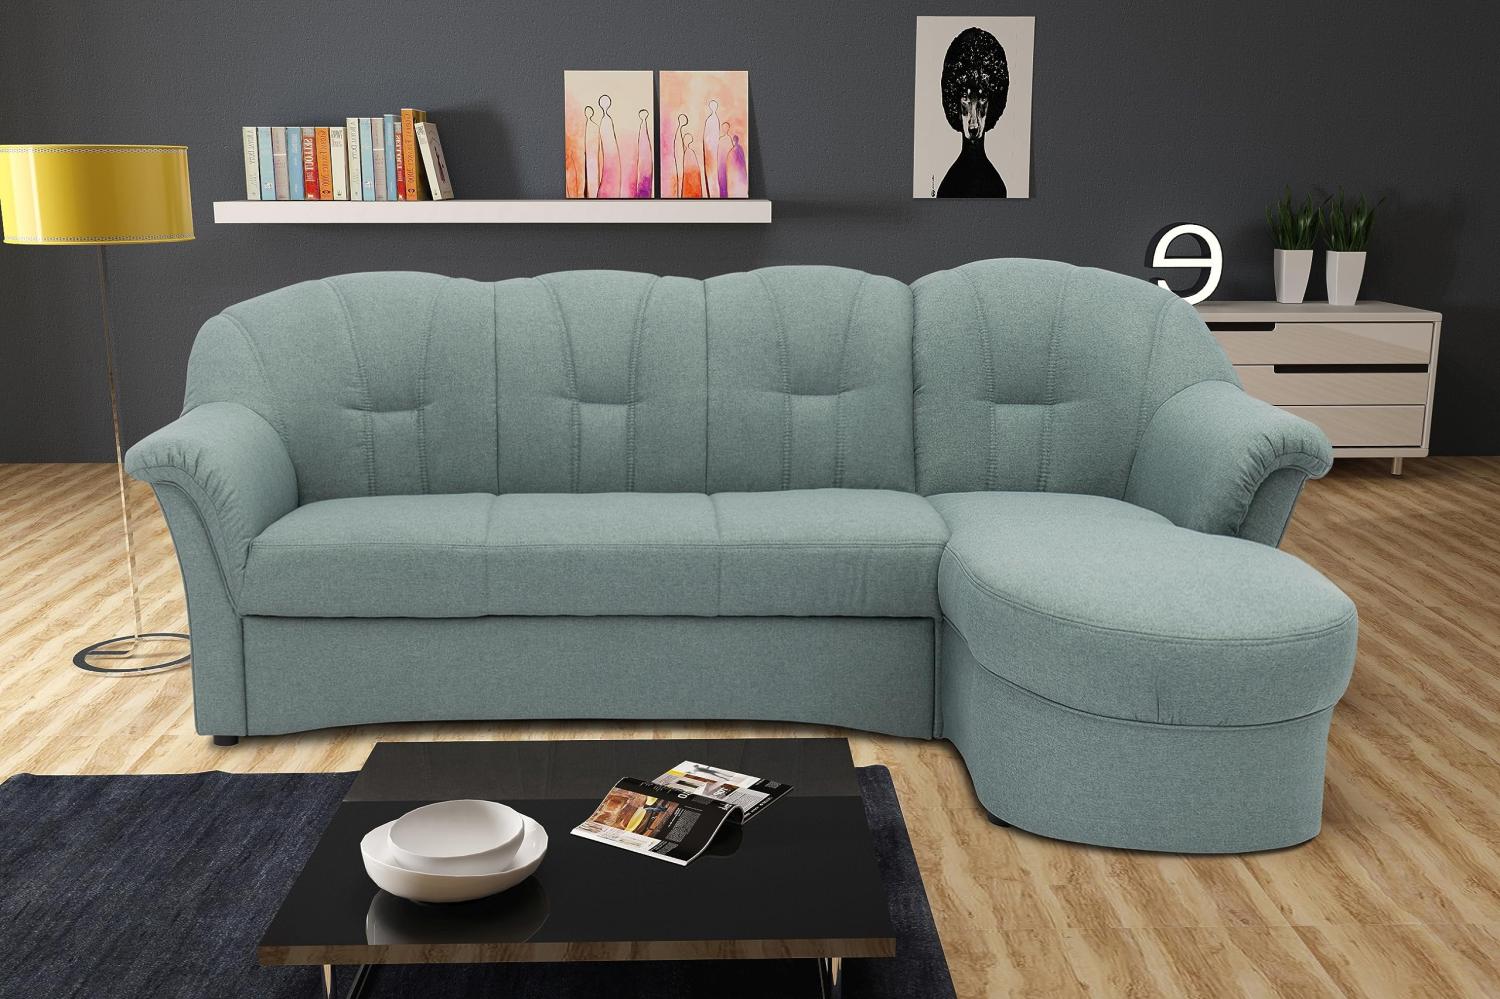 DOMO Collection Puno Ecksofa, Sofa in L-Form, Eckcouch, Sofa, Couch mit Longchair und Schlaffunktion, 233 x 142 cm, Polstermöbel in eisblau Bild 1